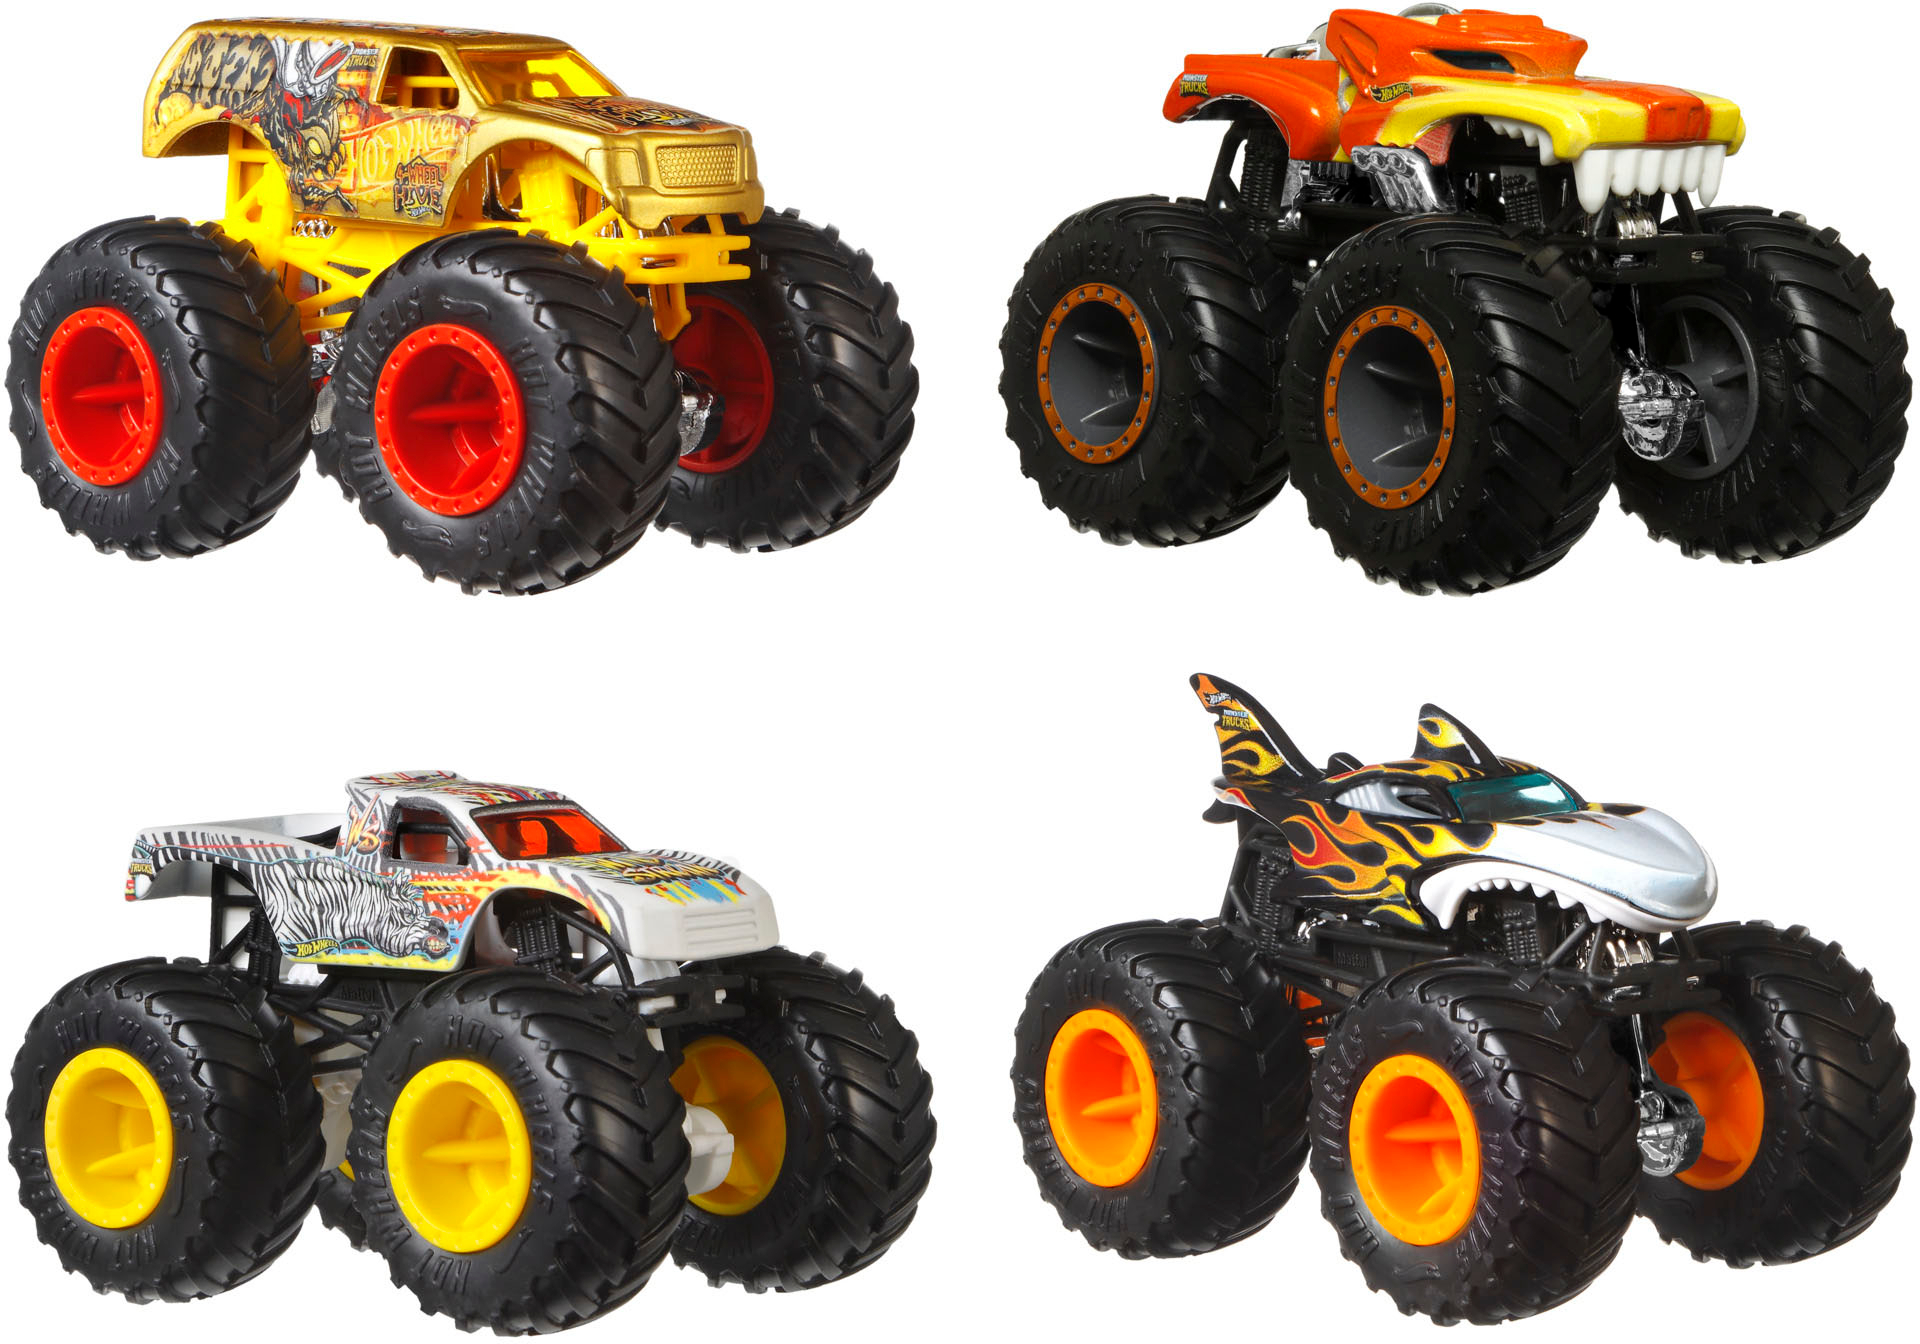 Hot Wheels Monster Trucks 1:64 4-Pack Assortment, Multipack of Toy